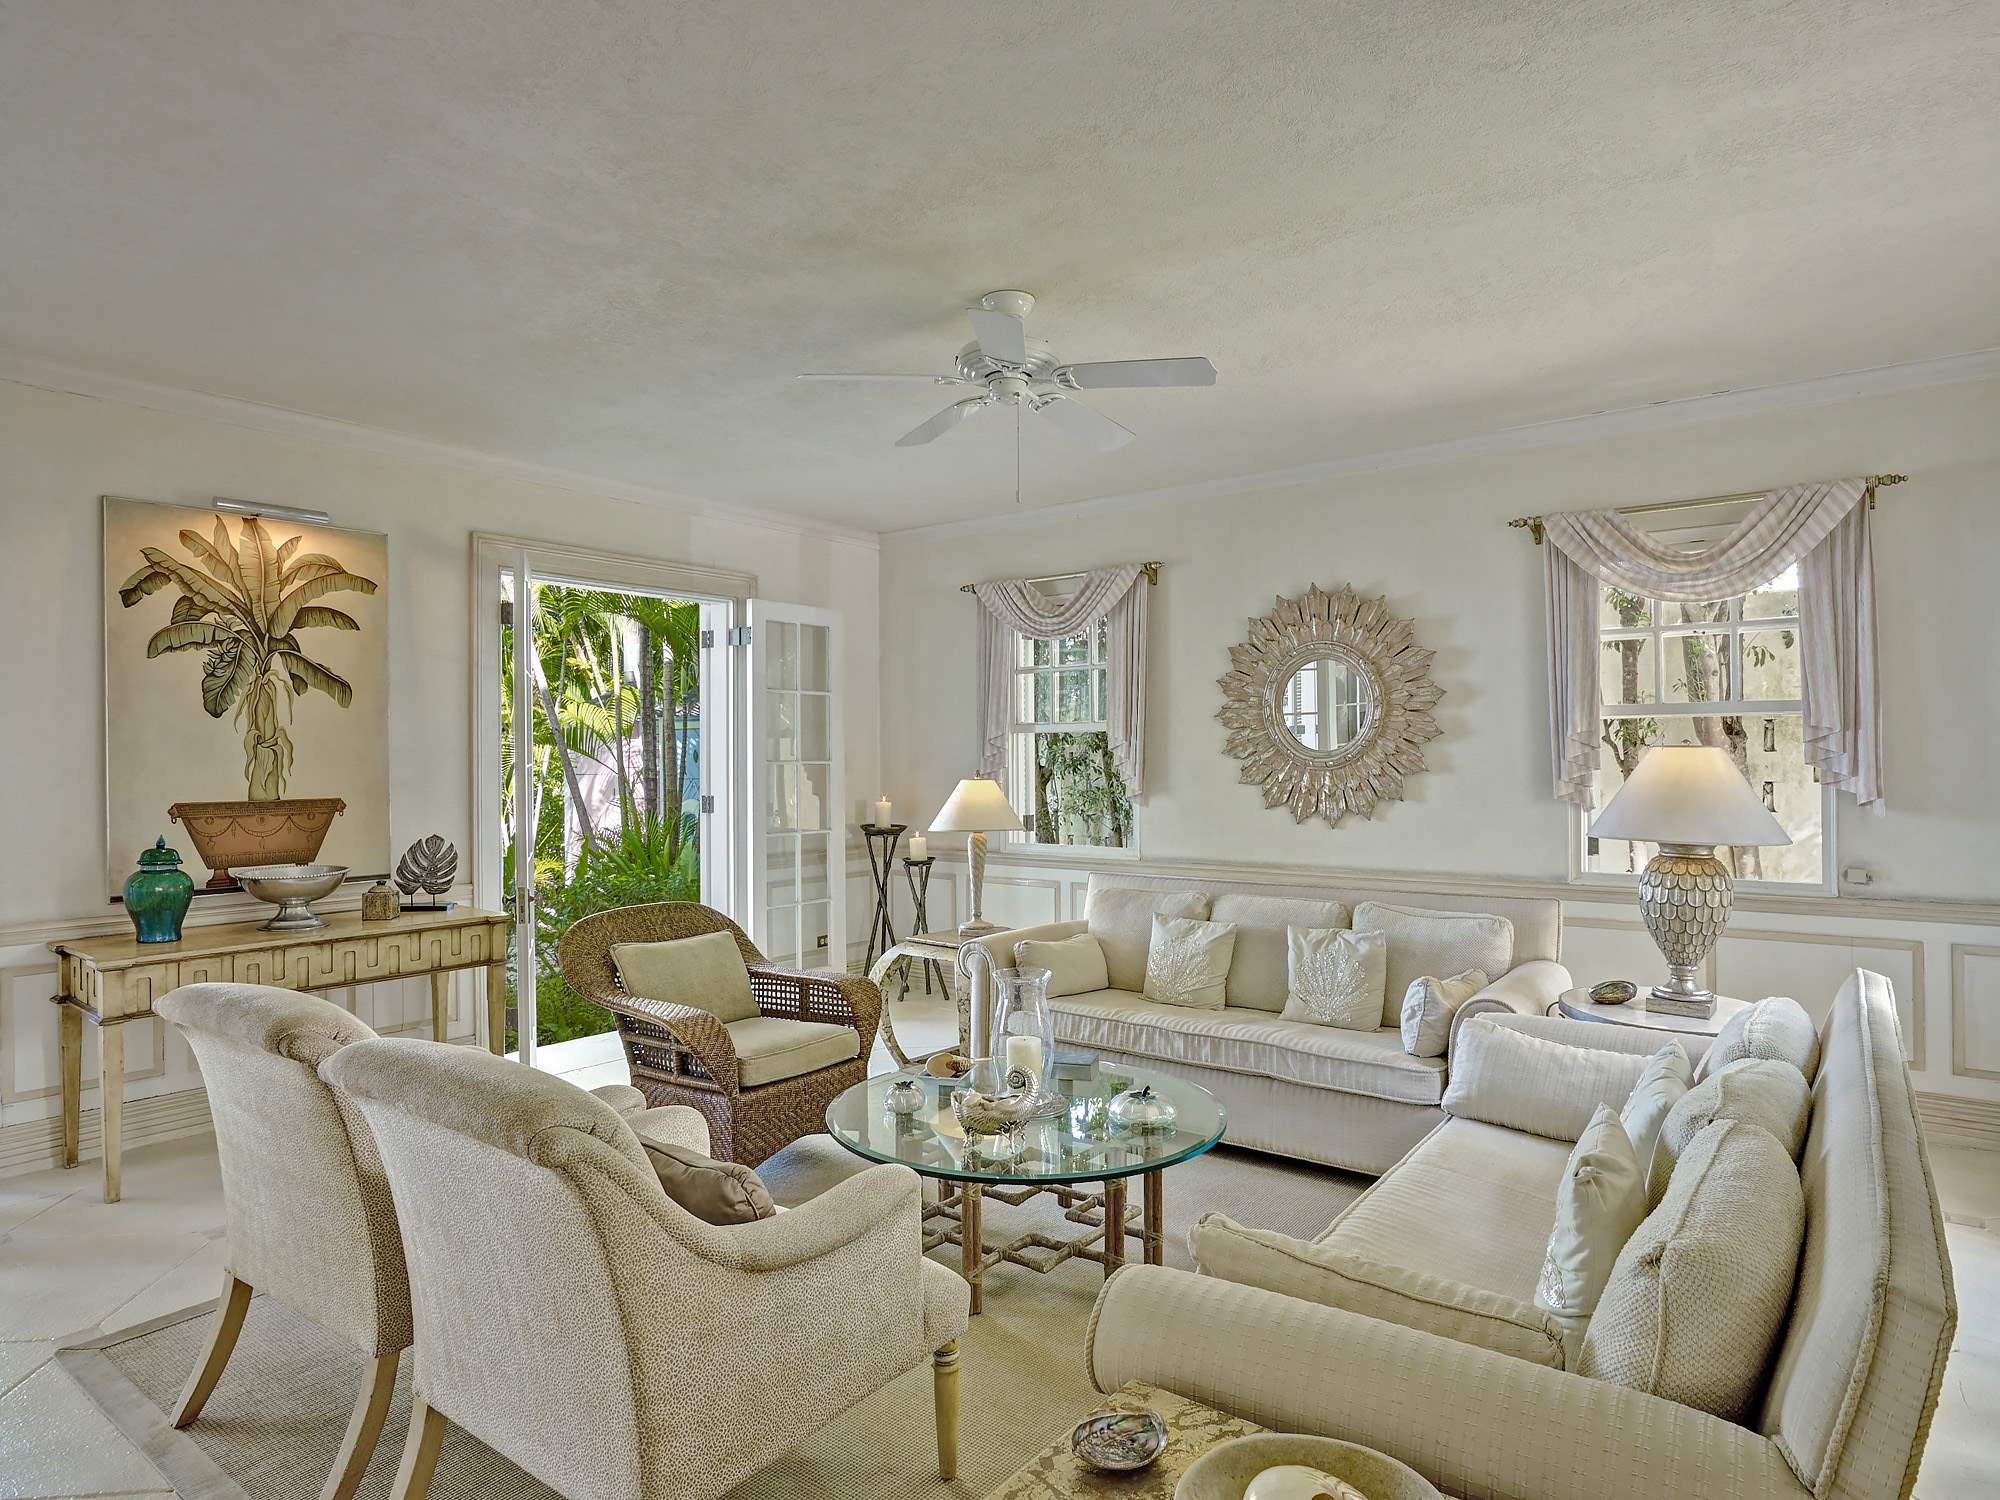 New Mansion, 4 bedroom villa in St. James & West Coast, Barbados Photo #7